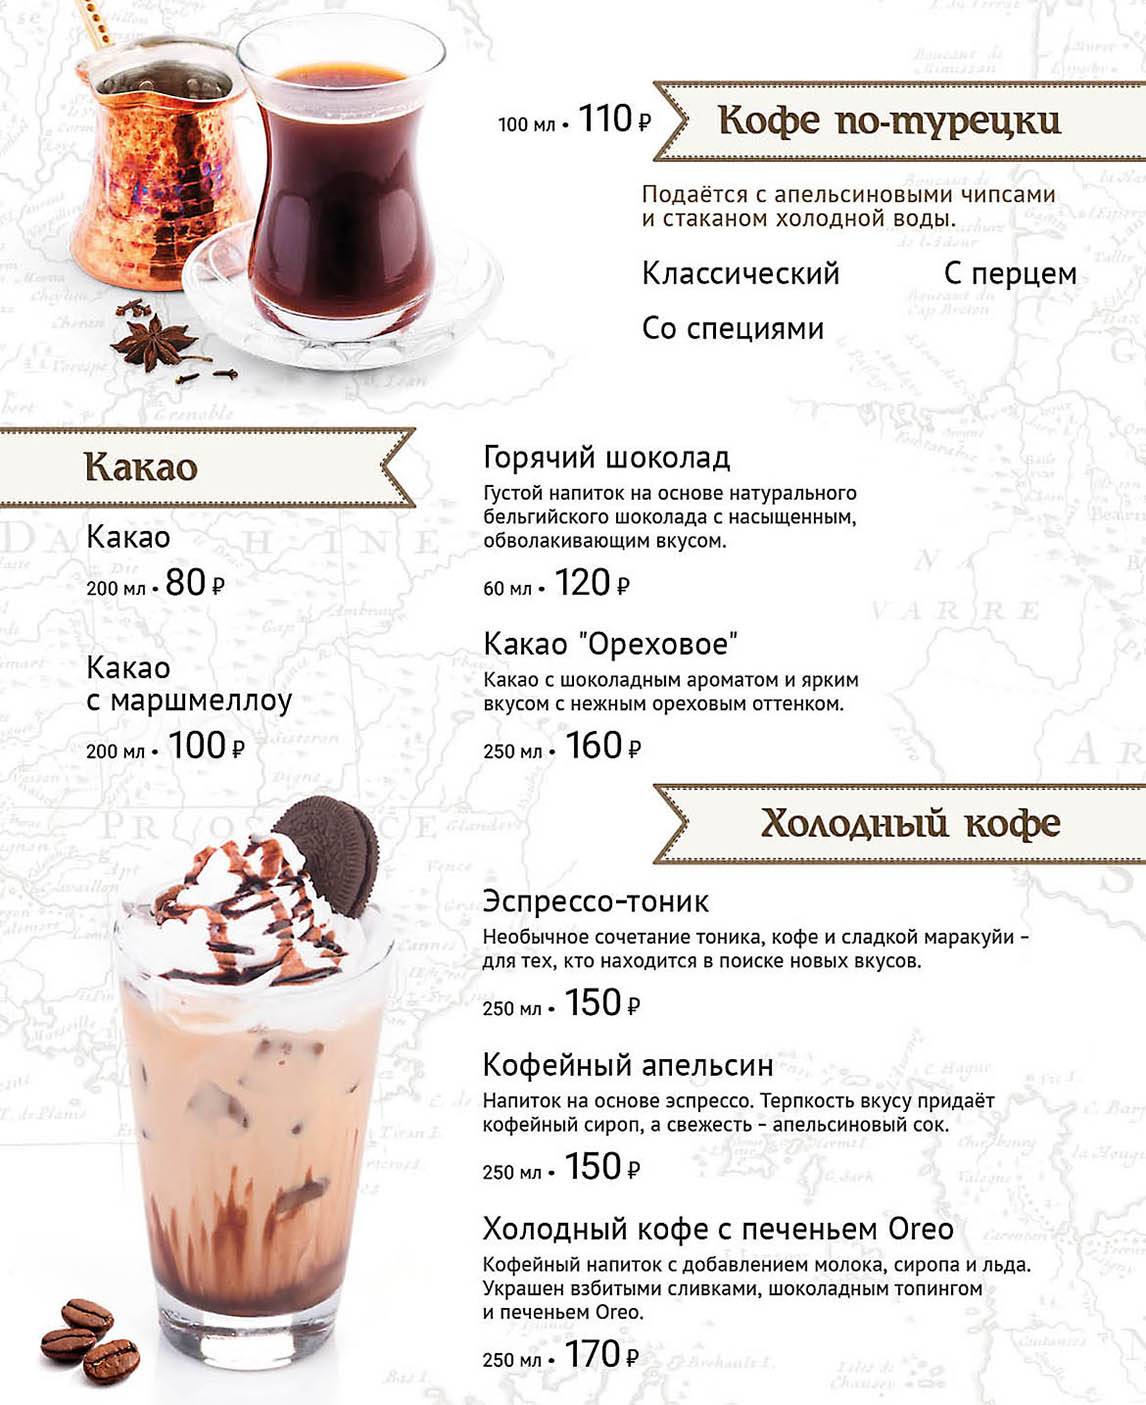 Коктейль из мороженого - как готовить в блендере с молоком, кофе, фруктами, шоколадом или алкоголем